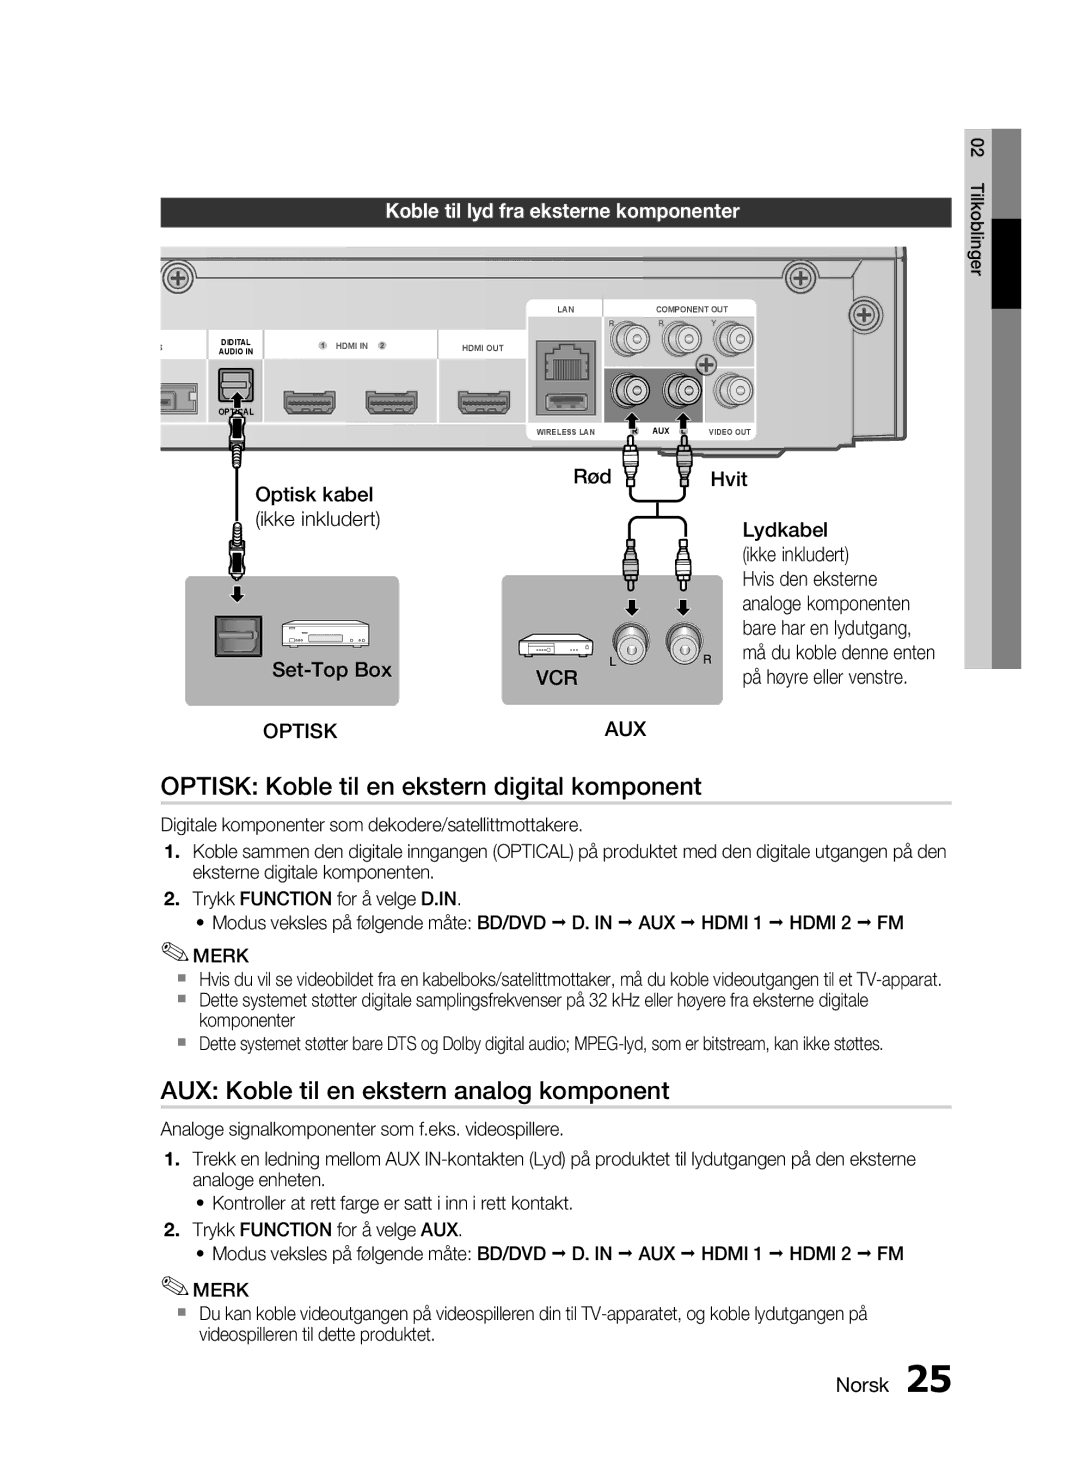 Samsung HT-C5500/XEE manual Optisk Koble til en ekstern digital komponent, AUX Koble til en ekstern analog komponent 